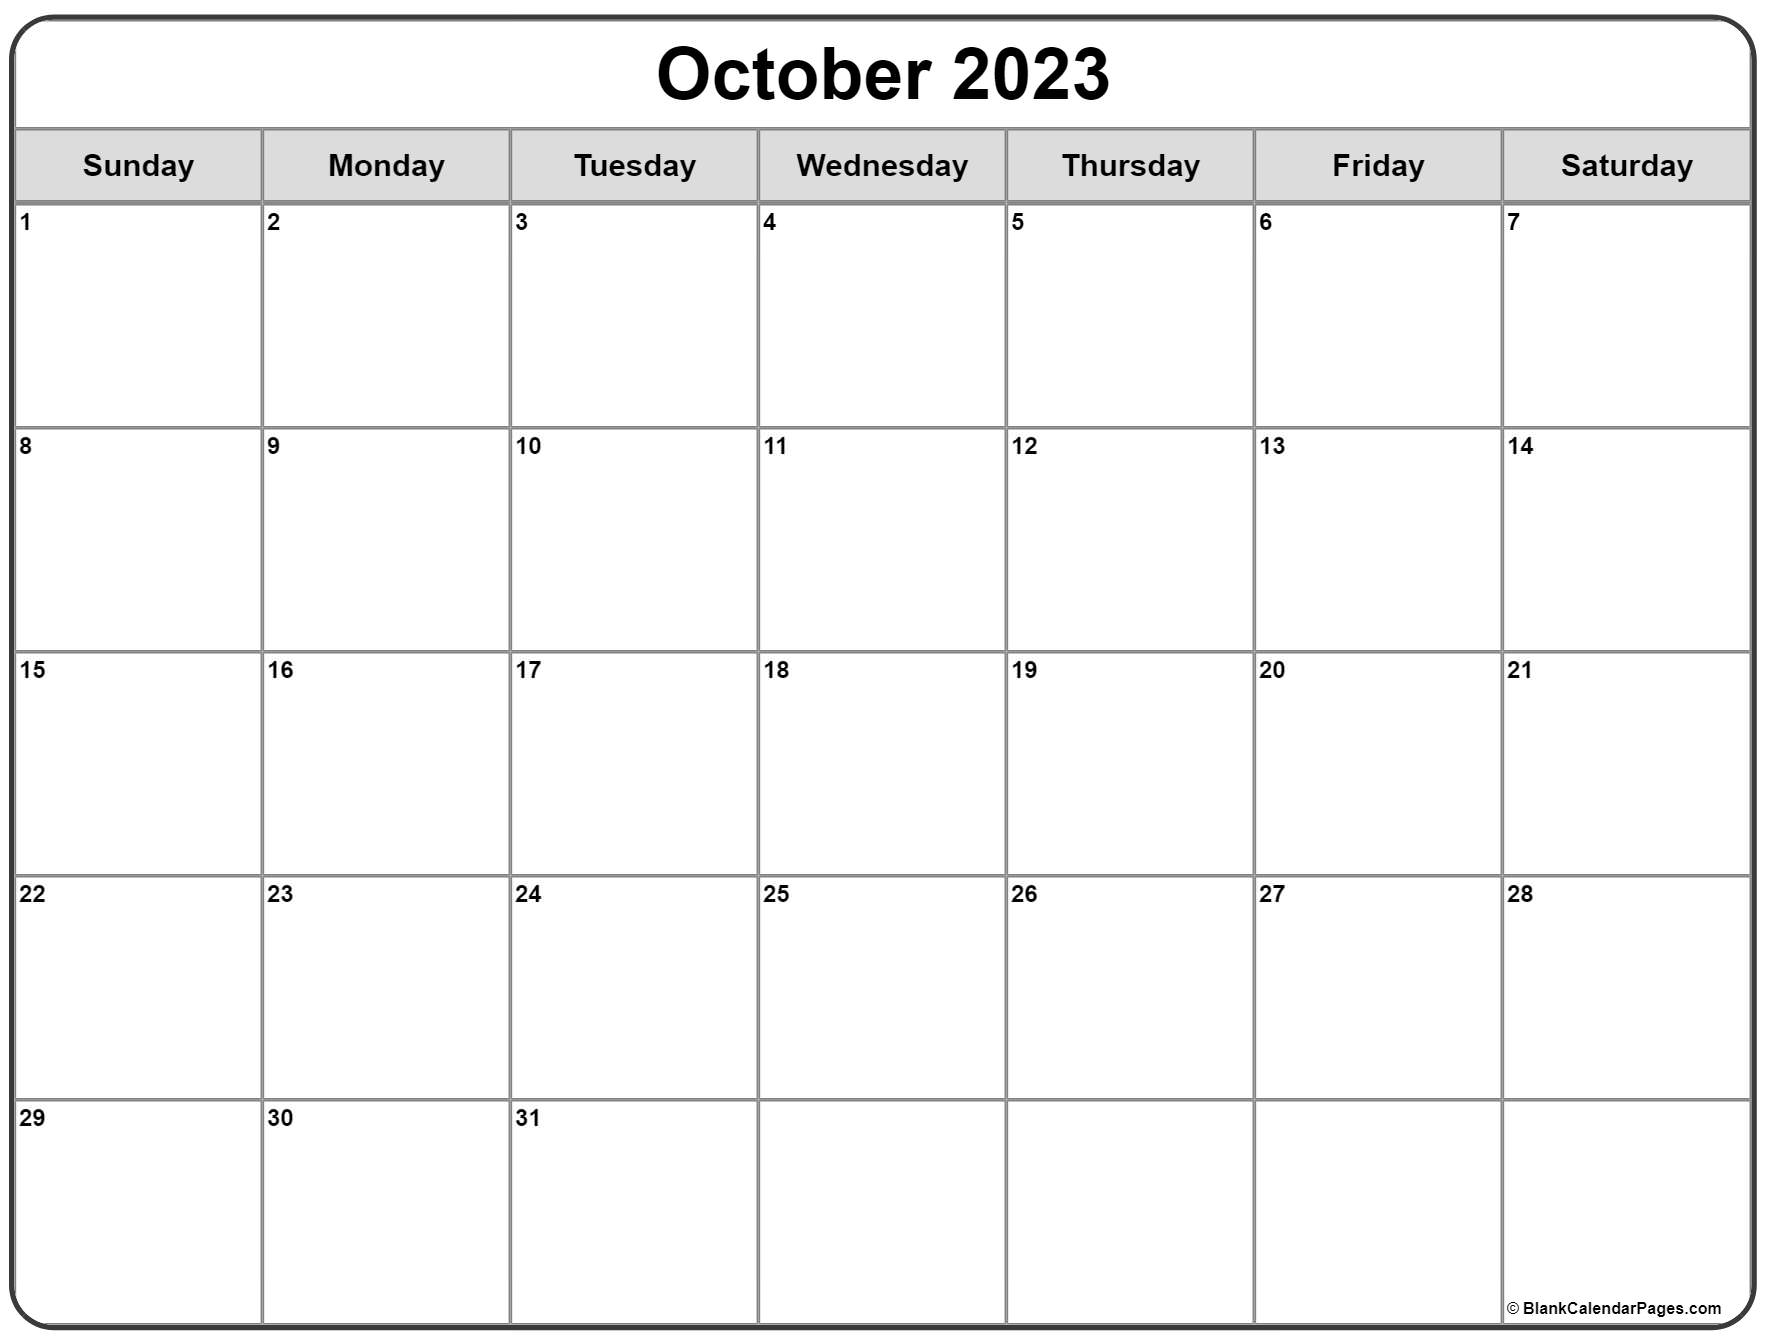 October 2023 calendar | free printable calendar